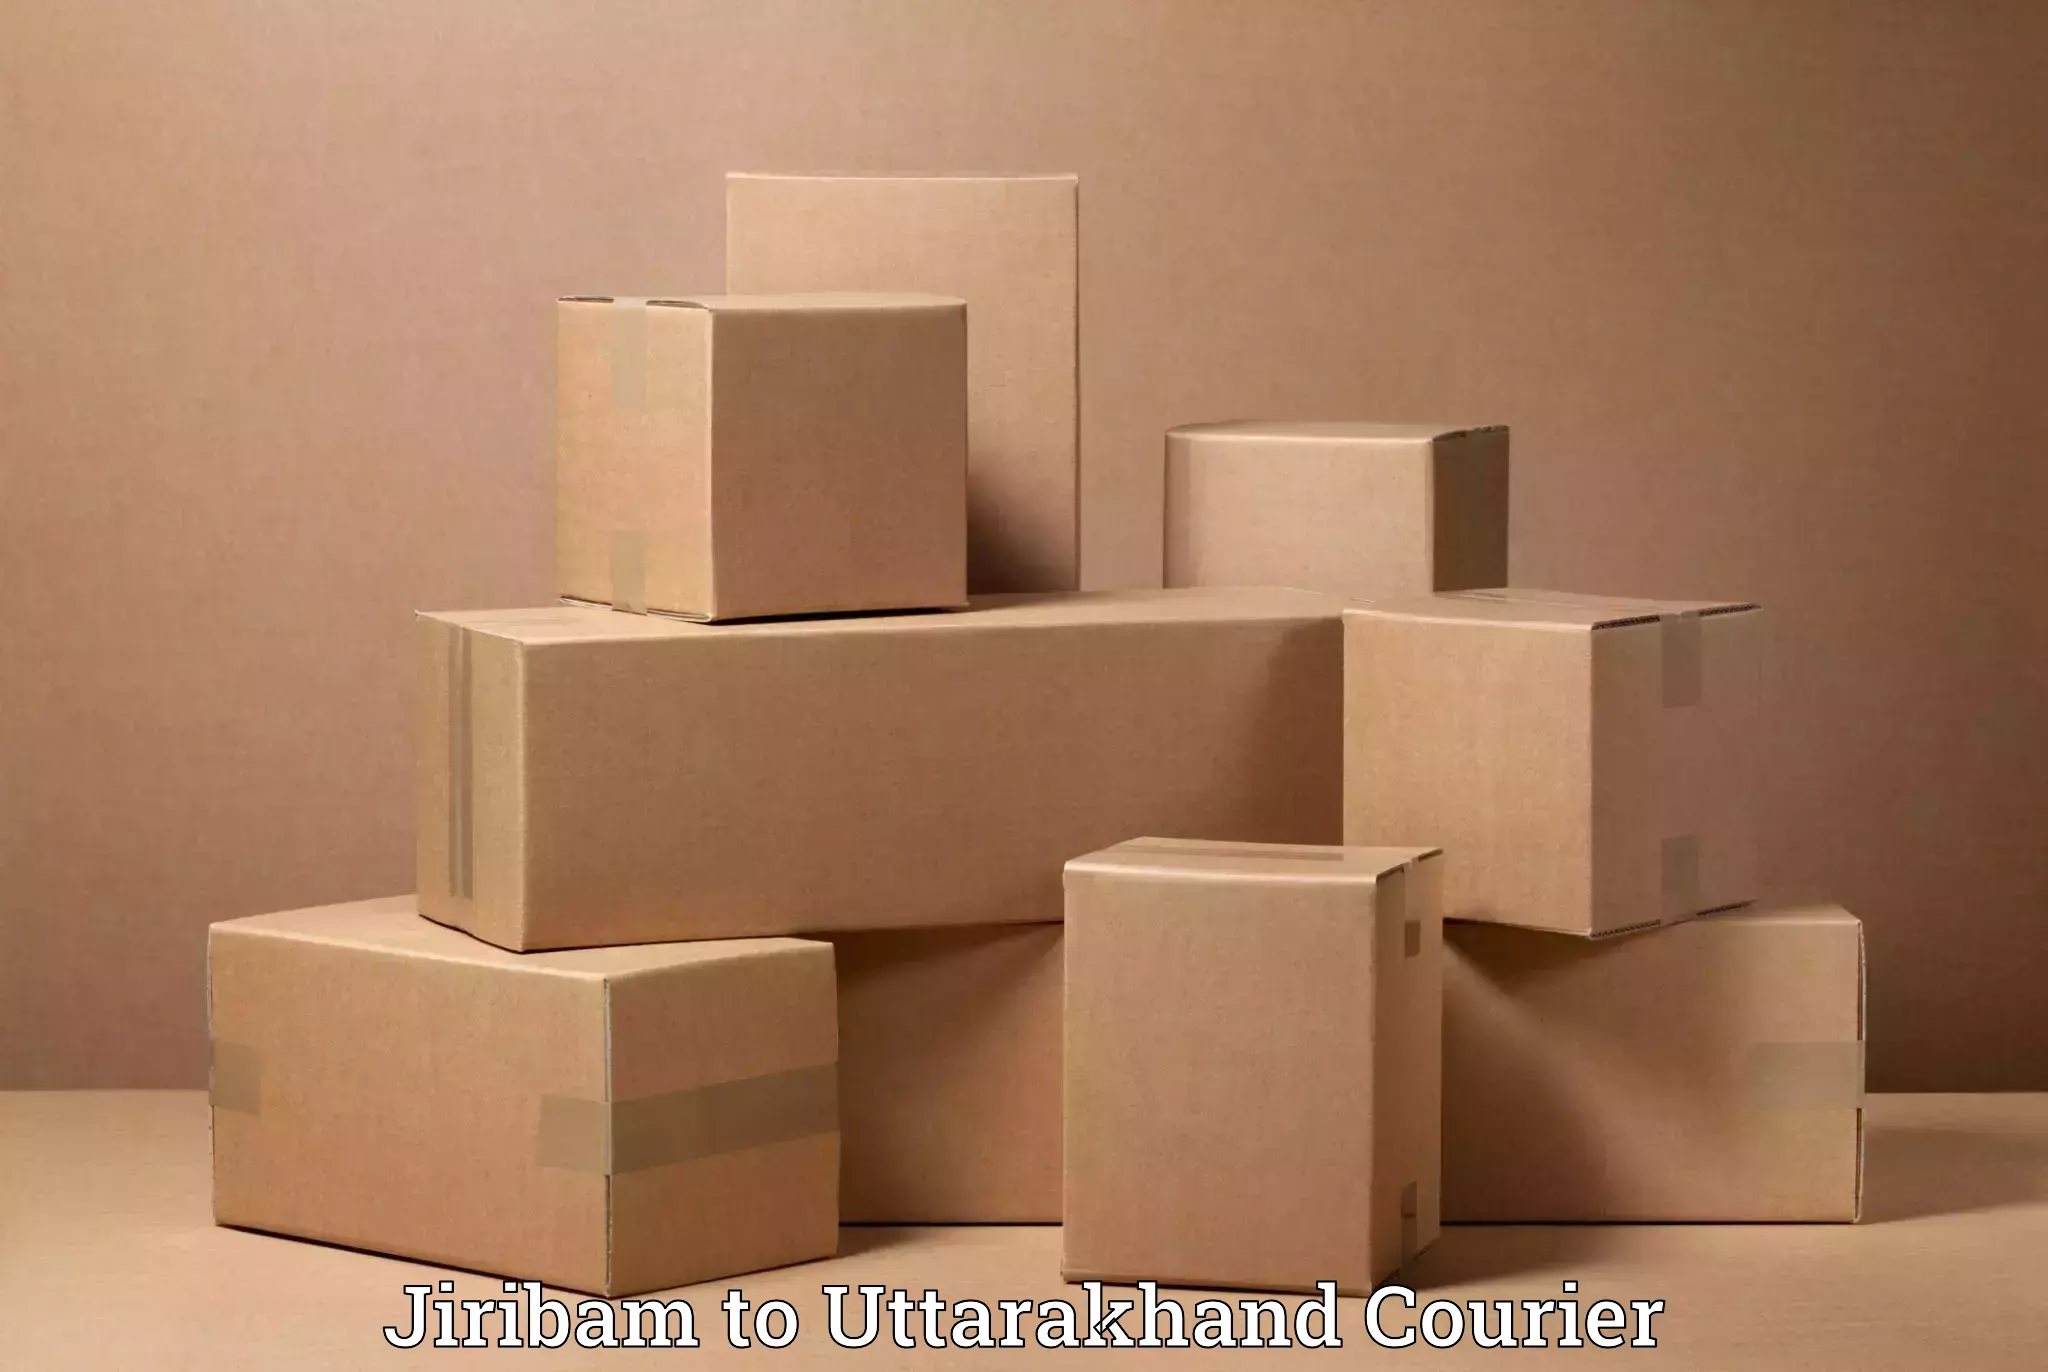 Professional furniture moving Jiribam to Uttarakhand